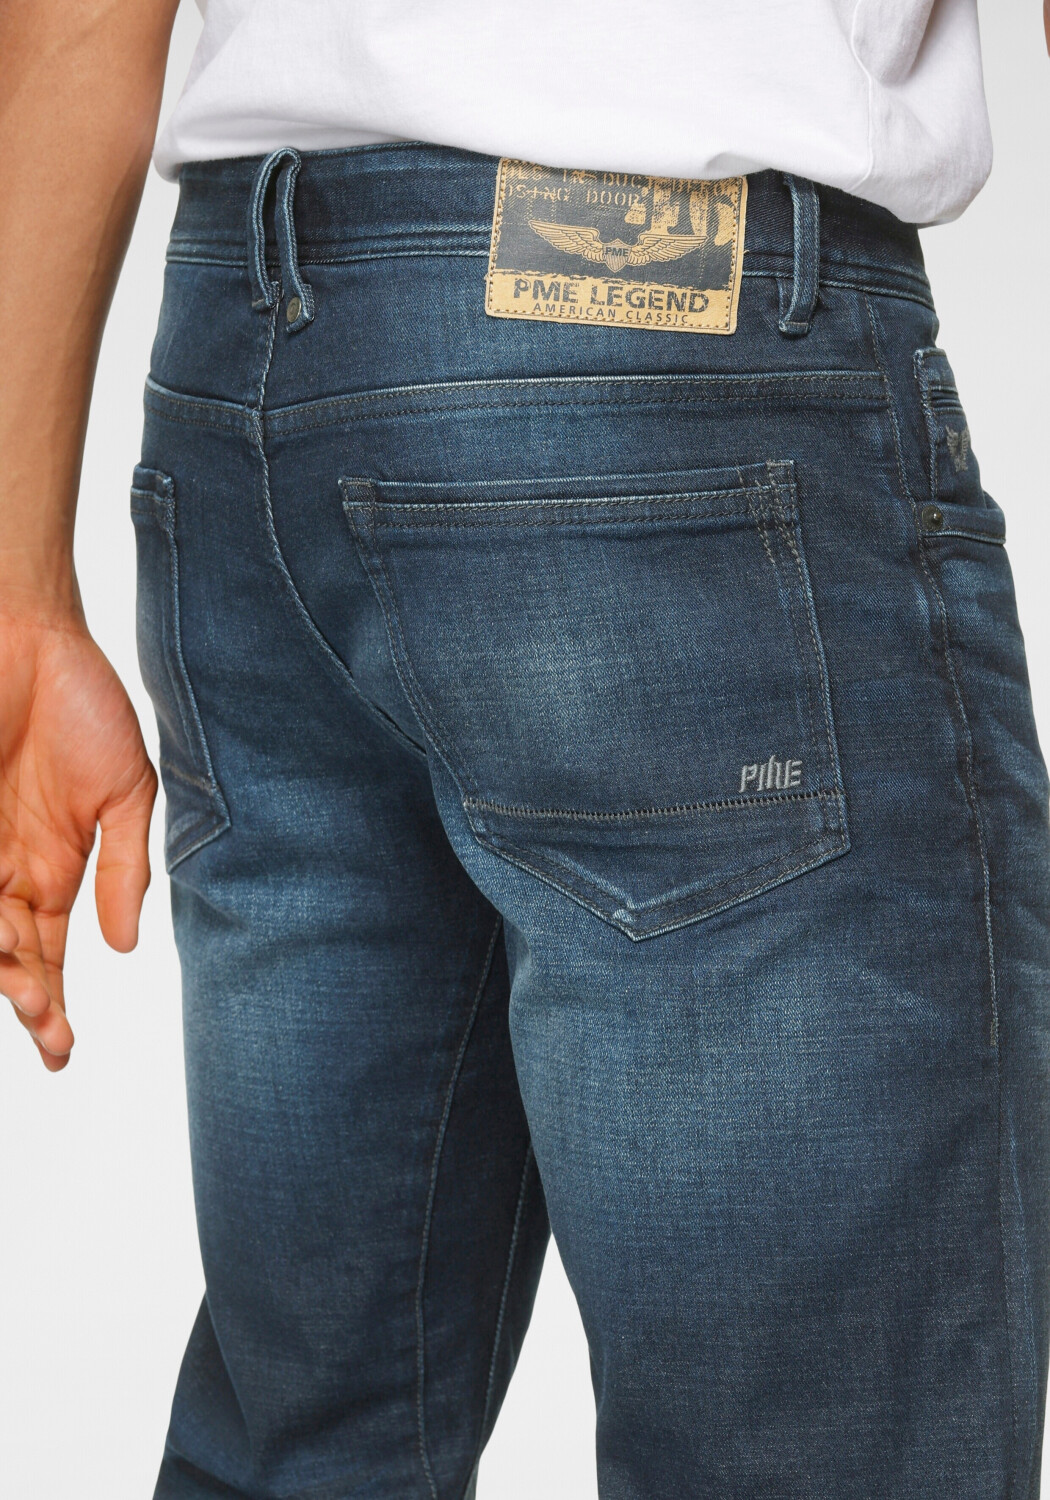 PME Legend Tailwheel Slim Fit 49,99 dark | Jeans € ab bei wash Preisvergleich